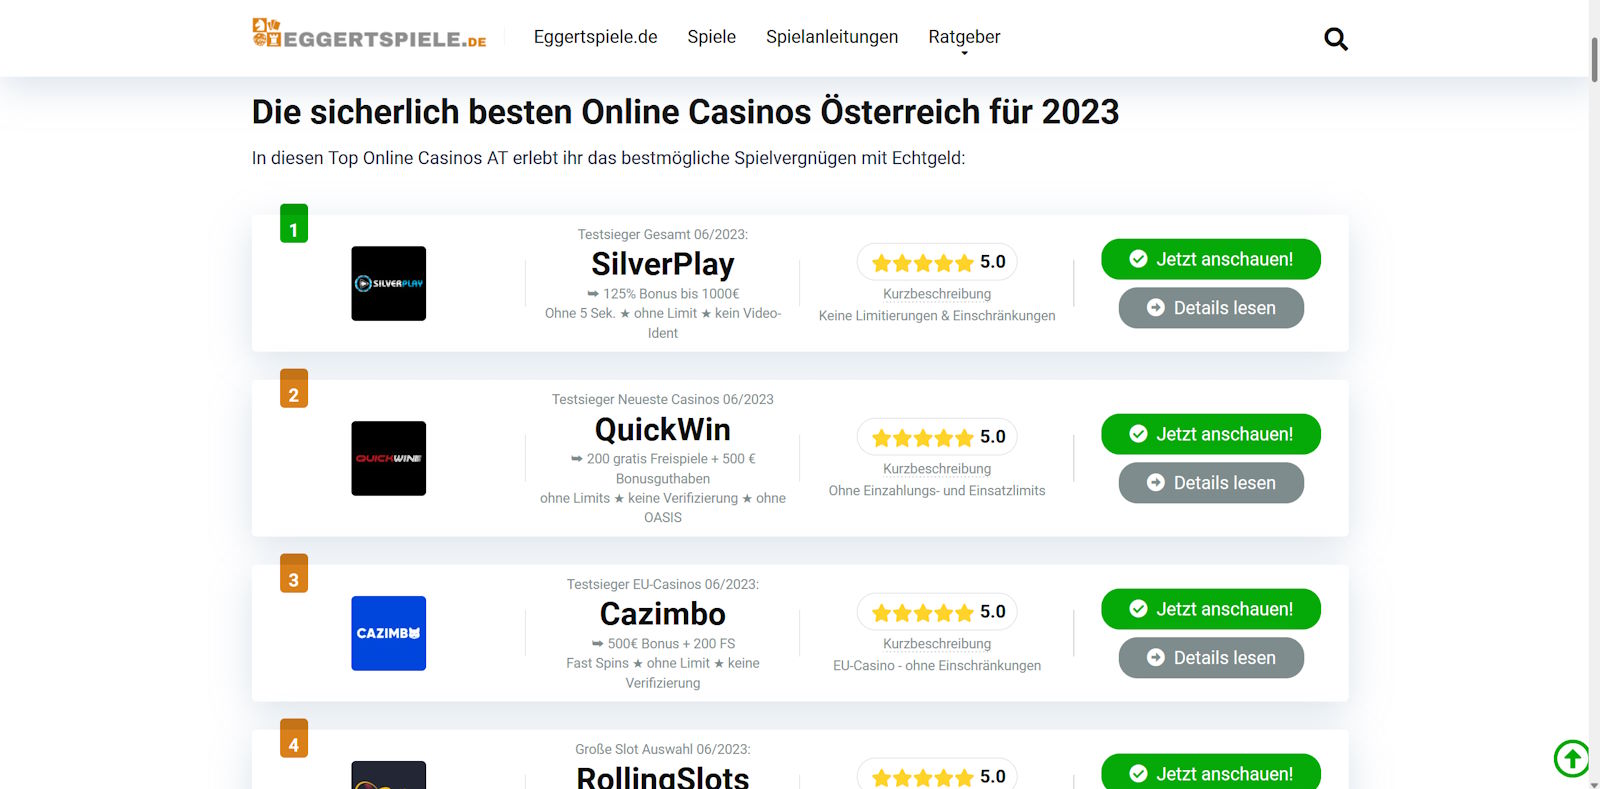 3 Wege, wie Twitter mein bestes Online Casino Österreich zerstört hat, ohne dass ich es bemerkt habe